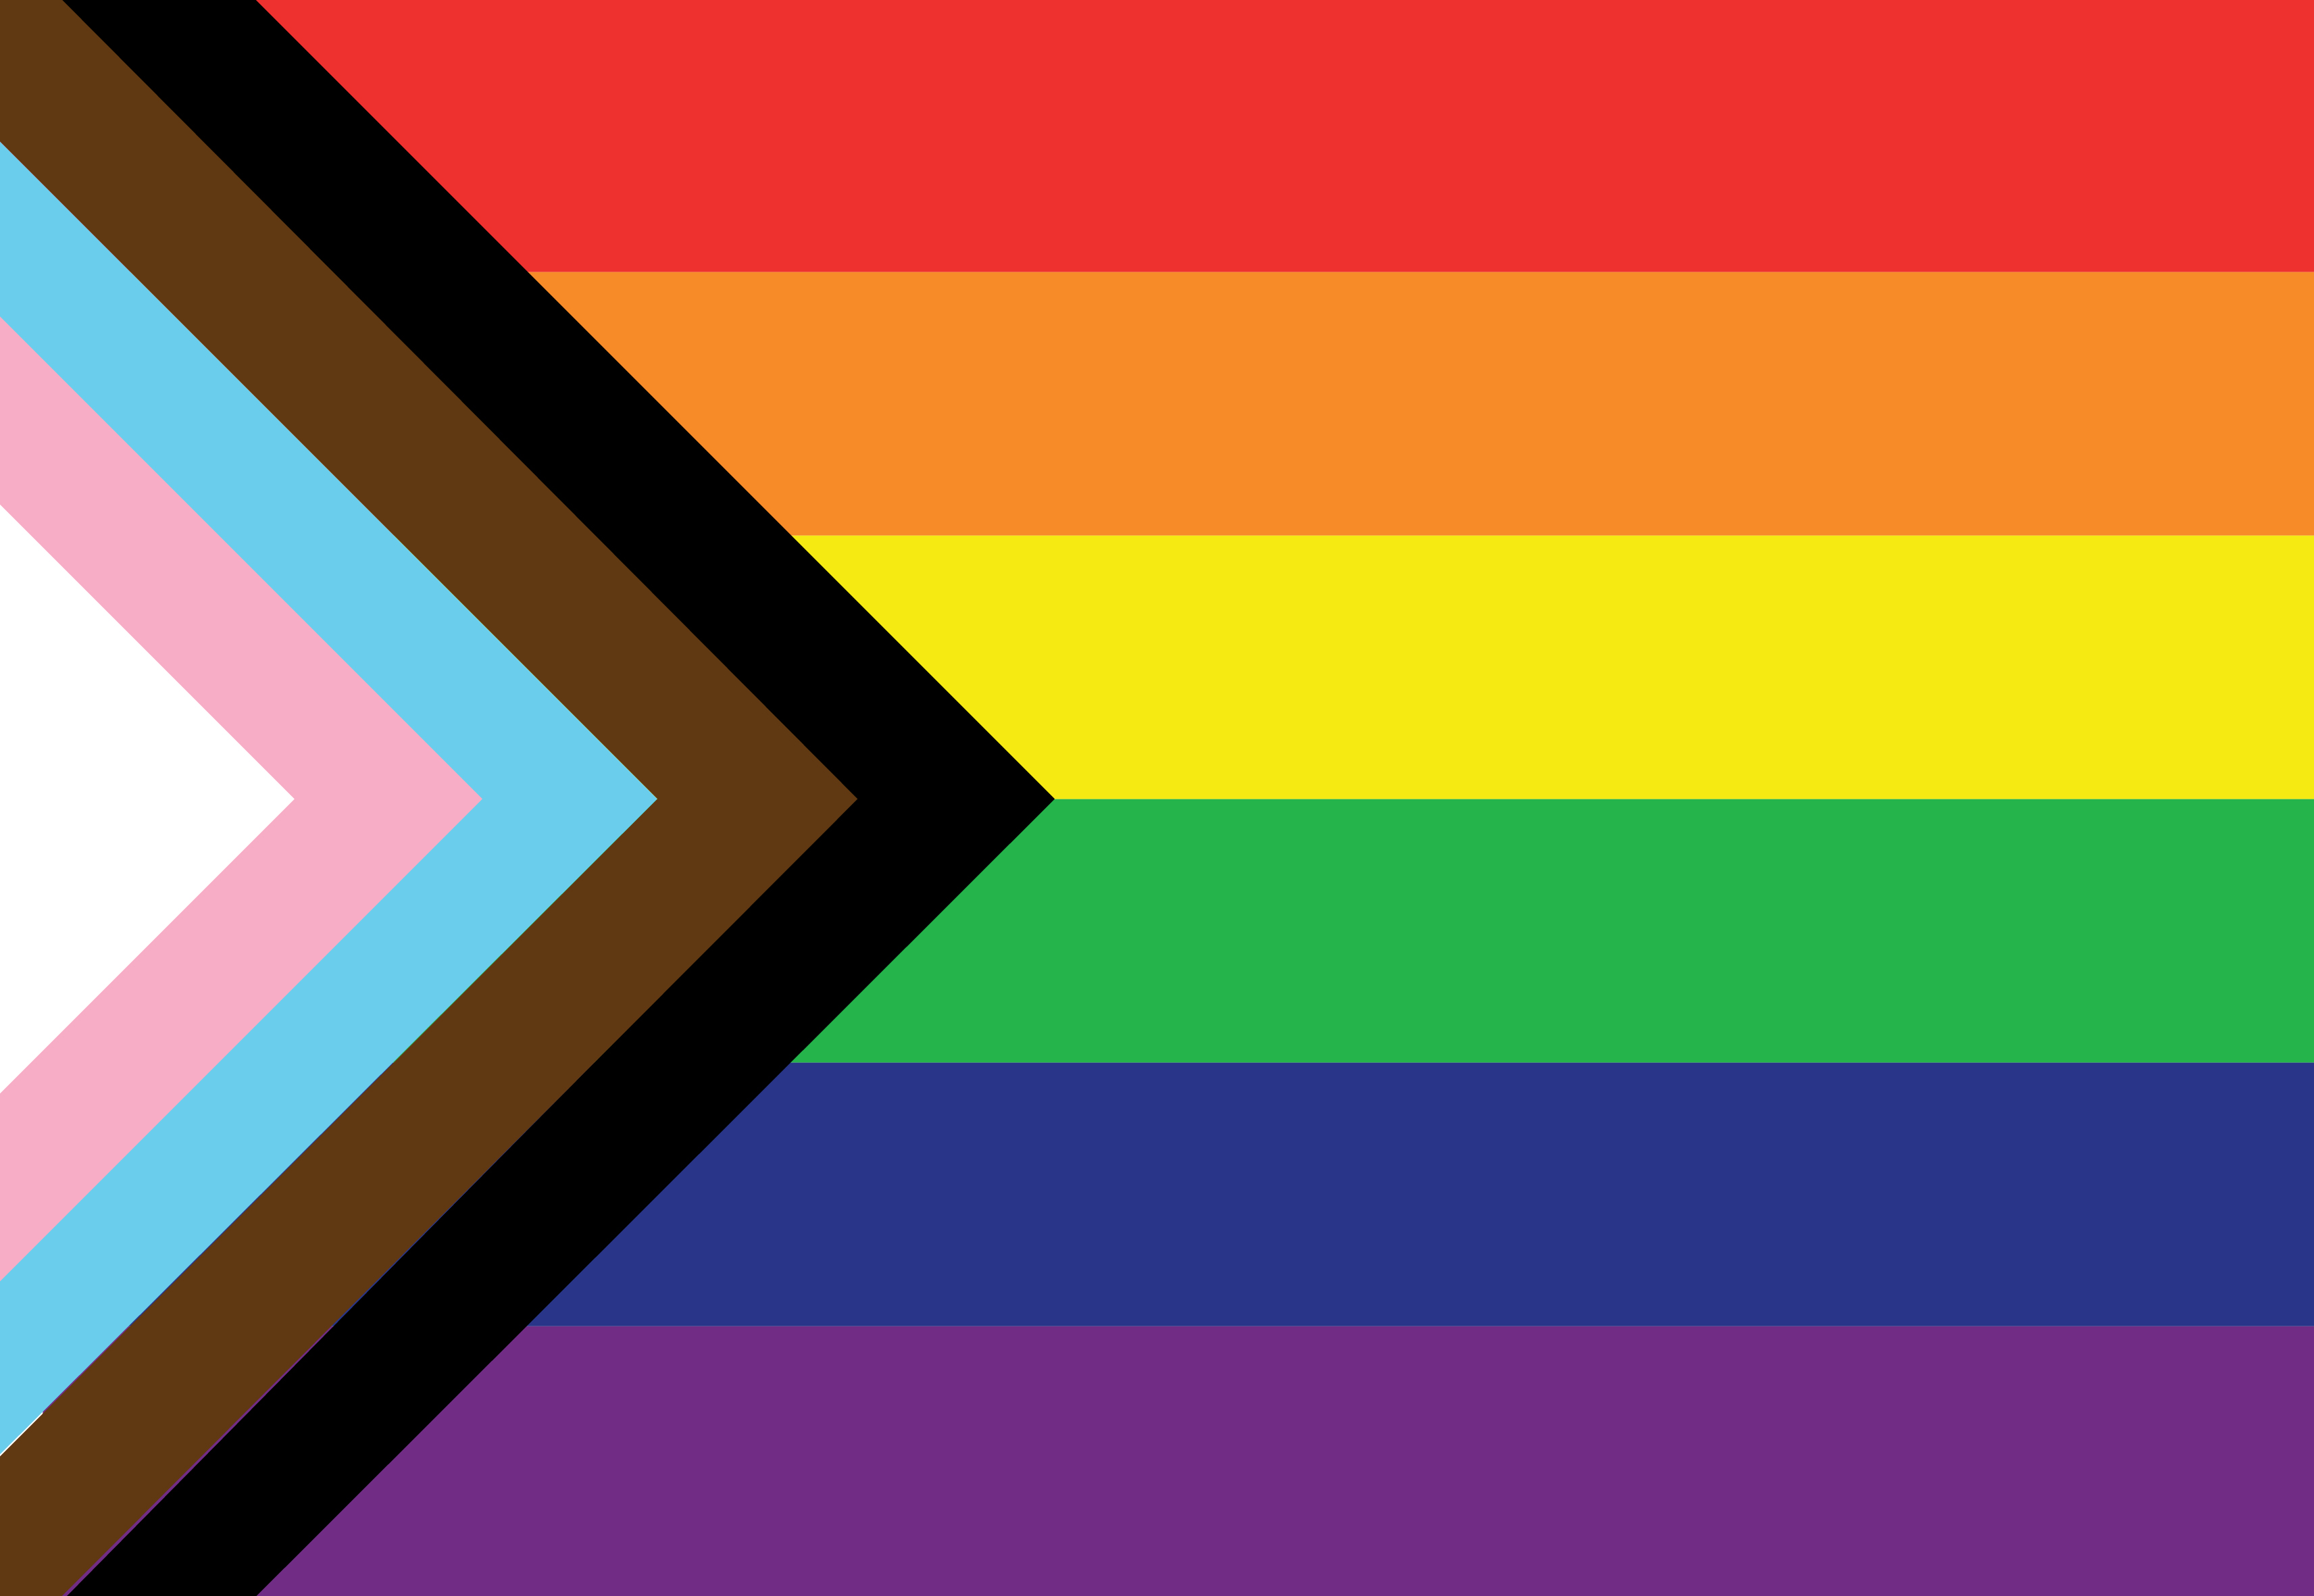 Photograph of Progressive Pride flag